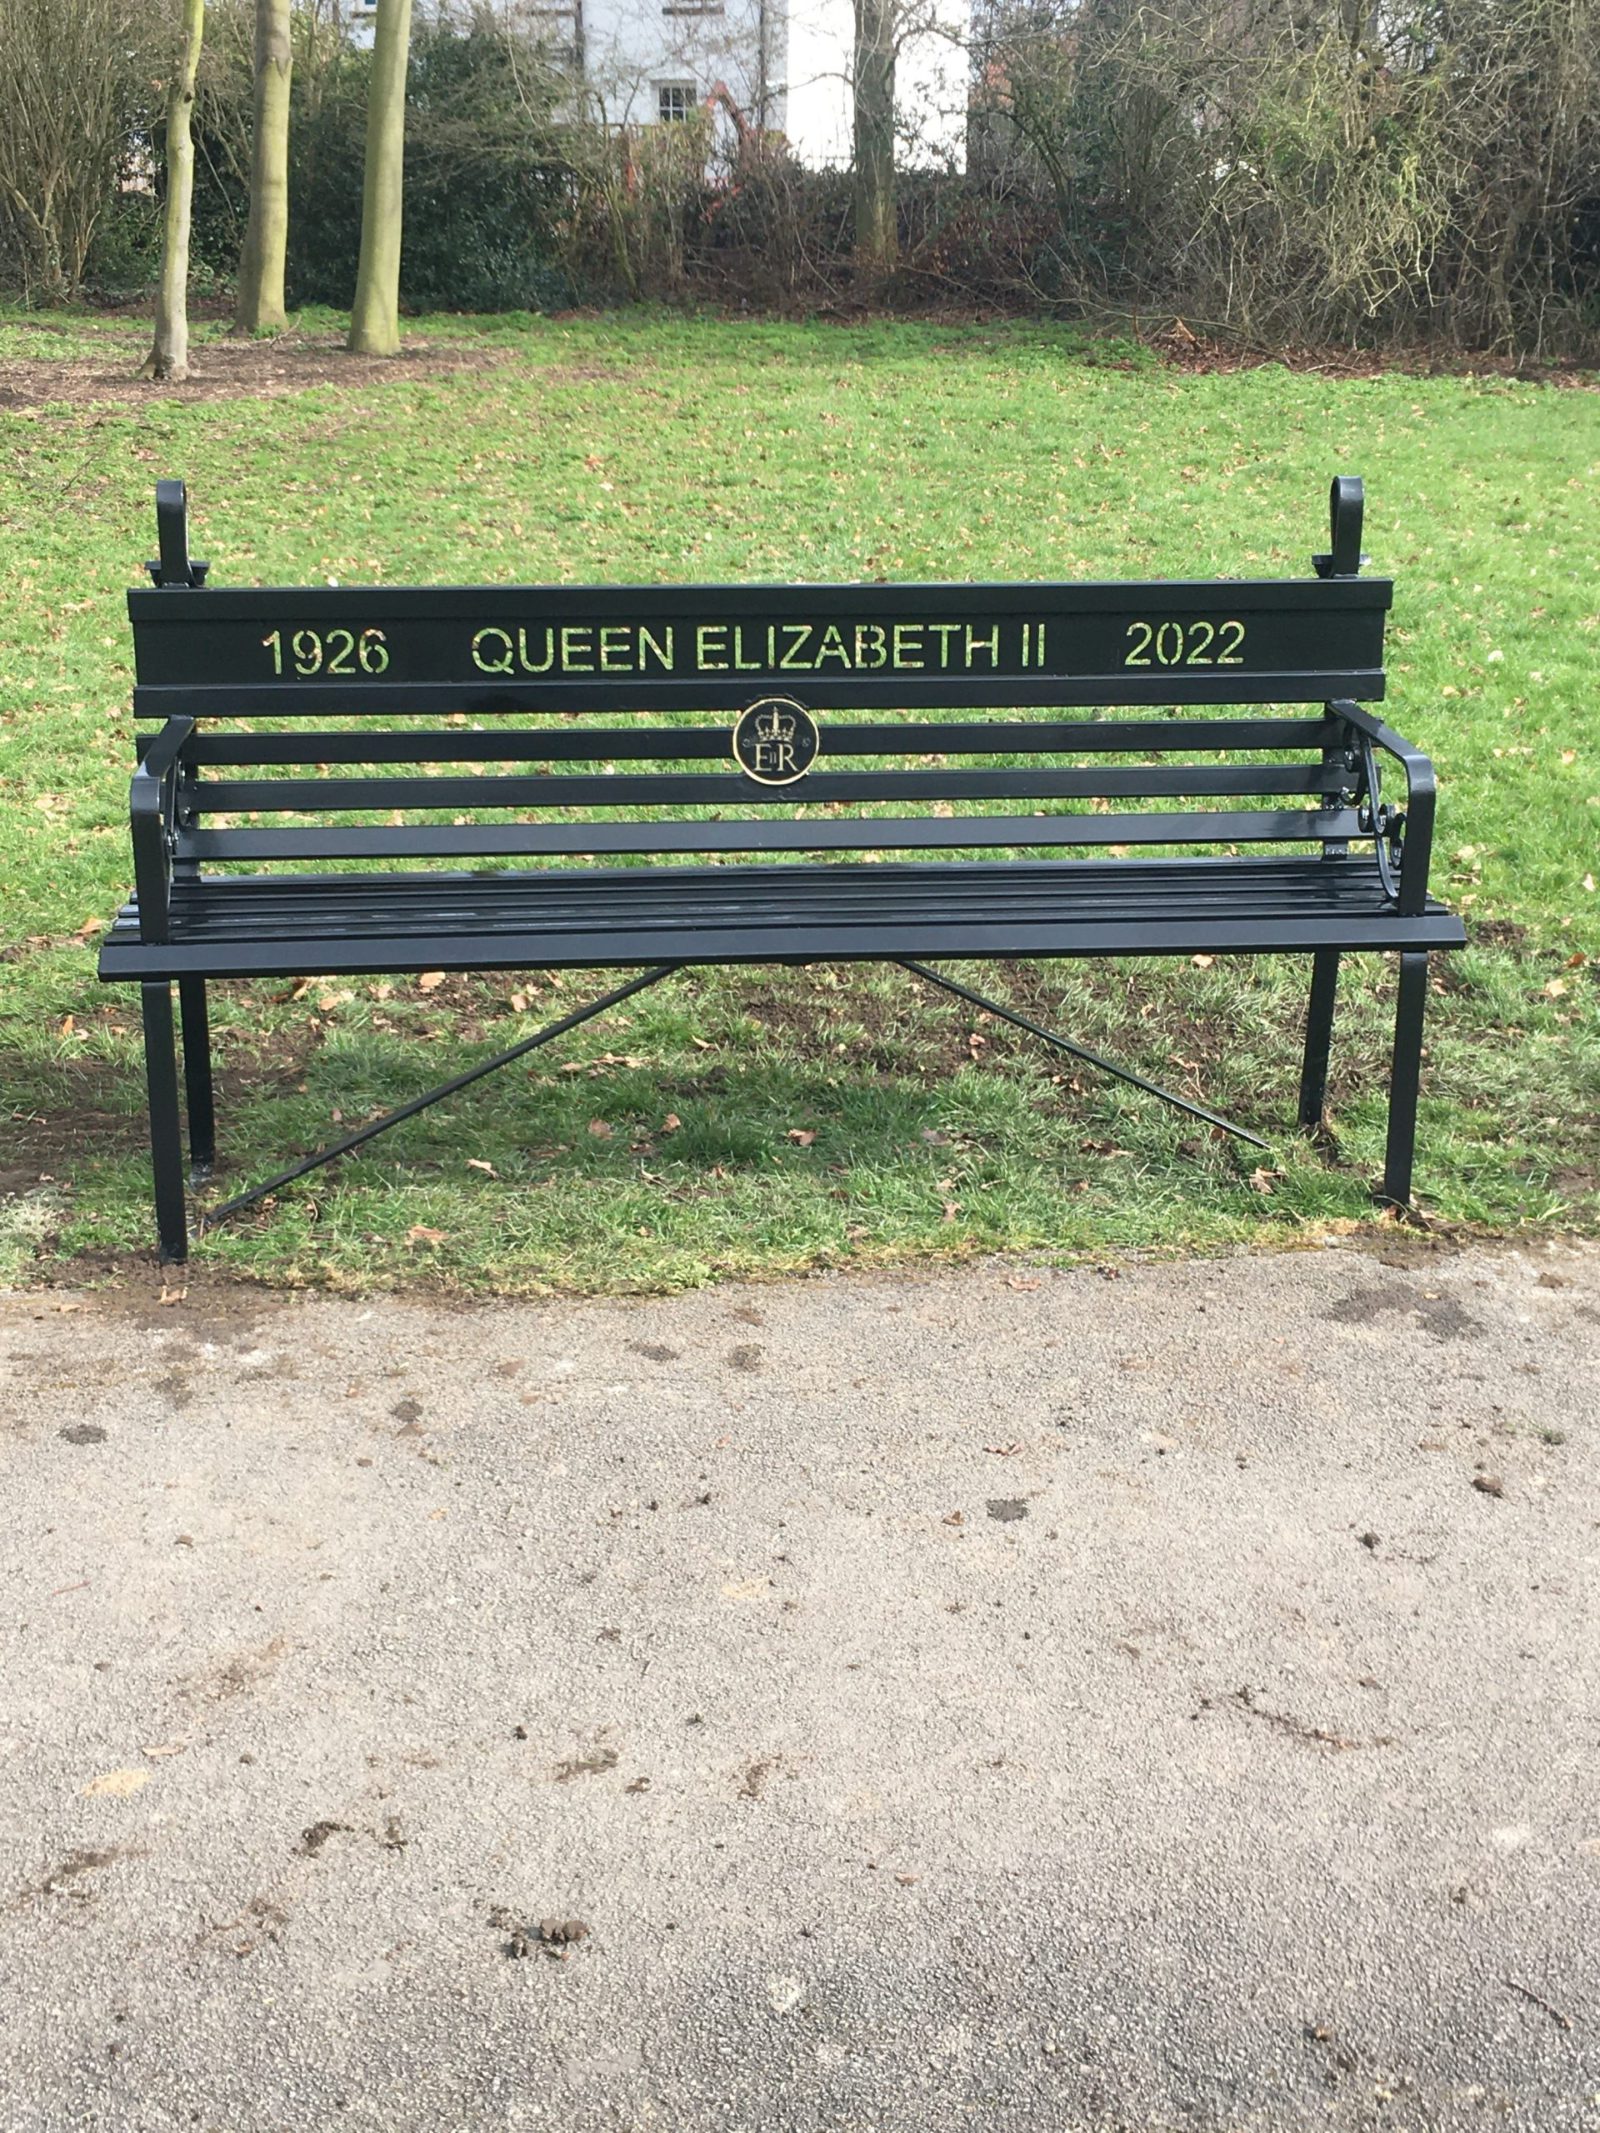 HM Queen Elizabeth II Memorial Bench